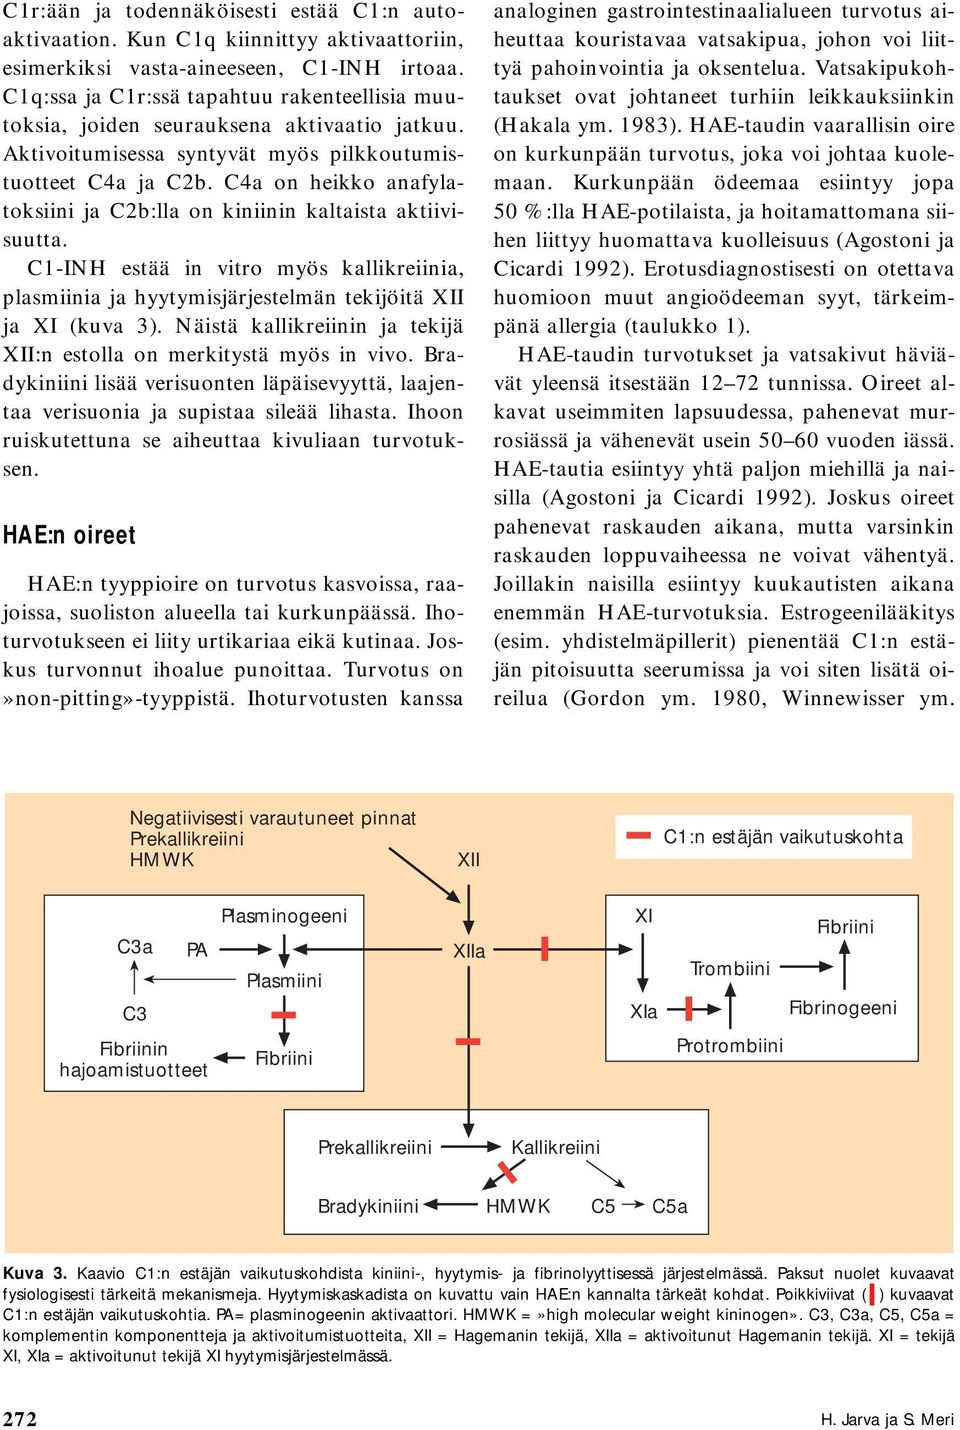 C4a on heikko anafylatoksiini ja C2b:lla on kiniinin kaltaista aktiivisuutta. C1-INH estää in vitro myös kallikreiinia, plasmiinia ja hyytymisjärjestelmän tekijöitä XII ja XI (kuva 3).